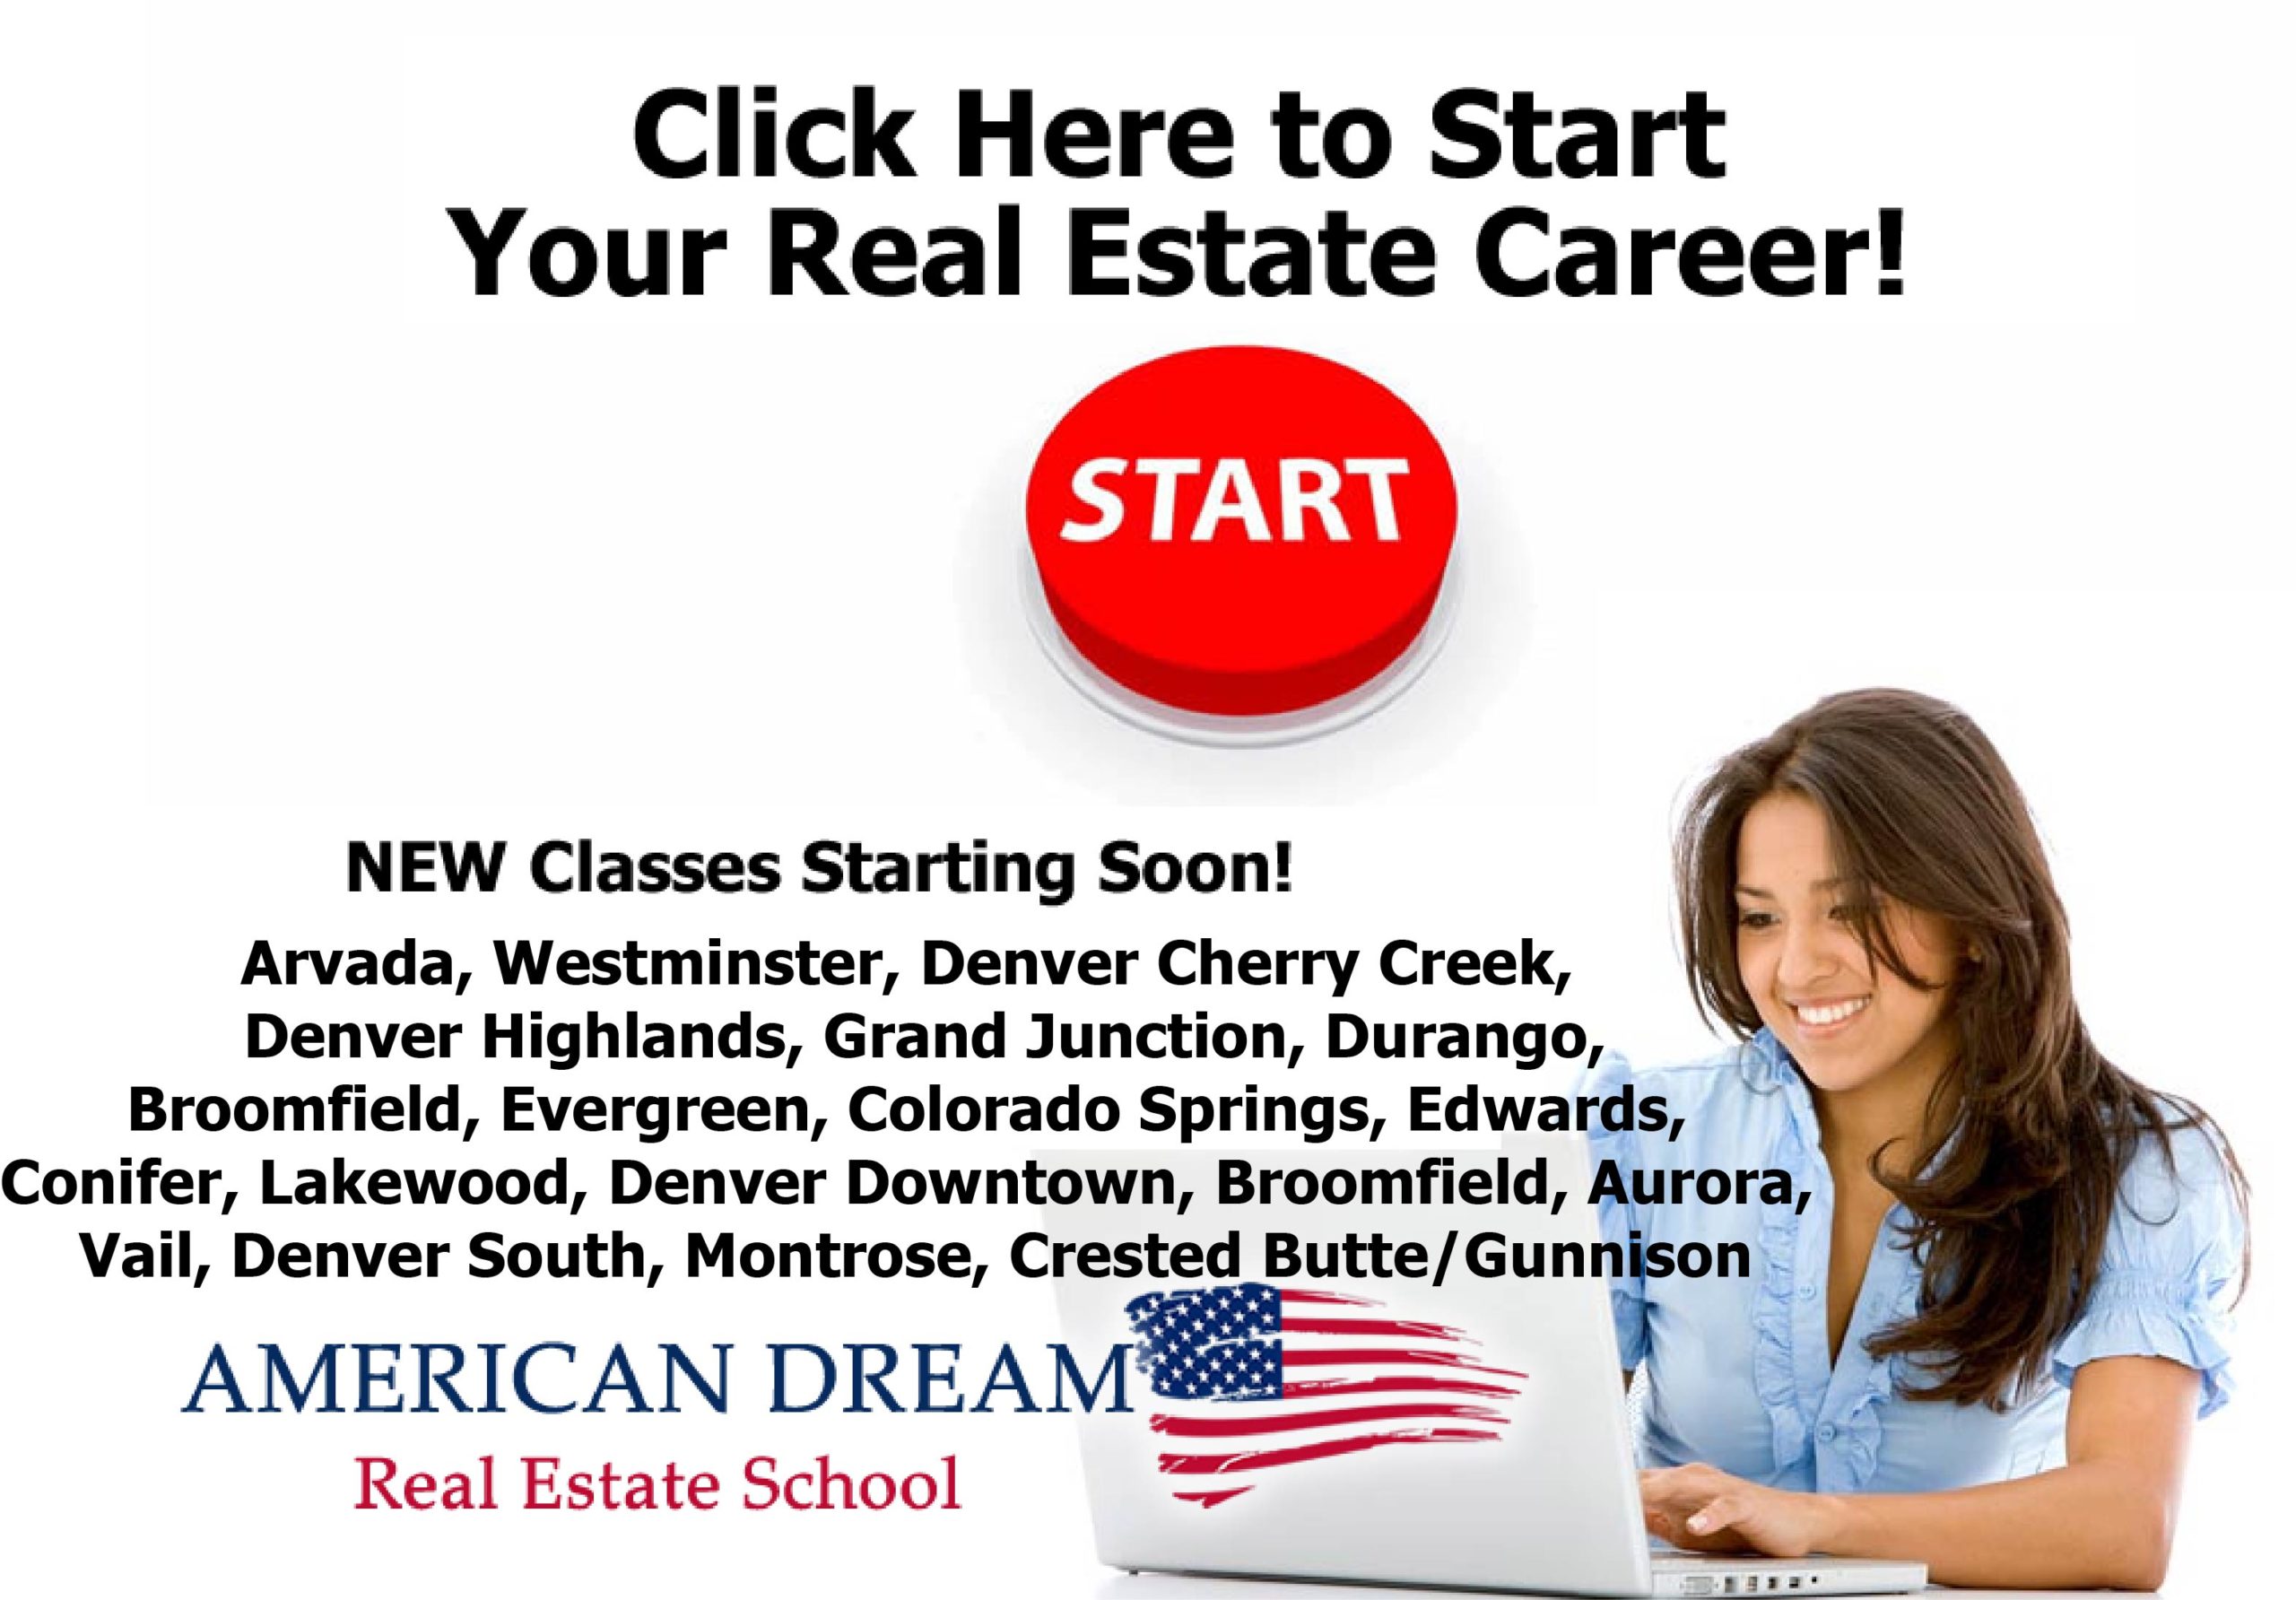 American Dream Real Estate School: Home